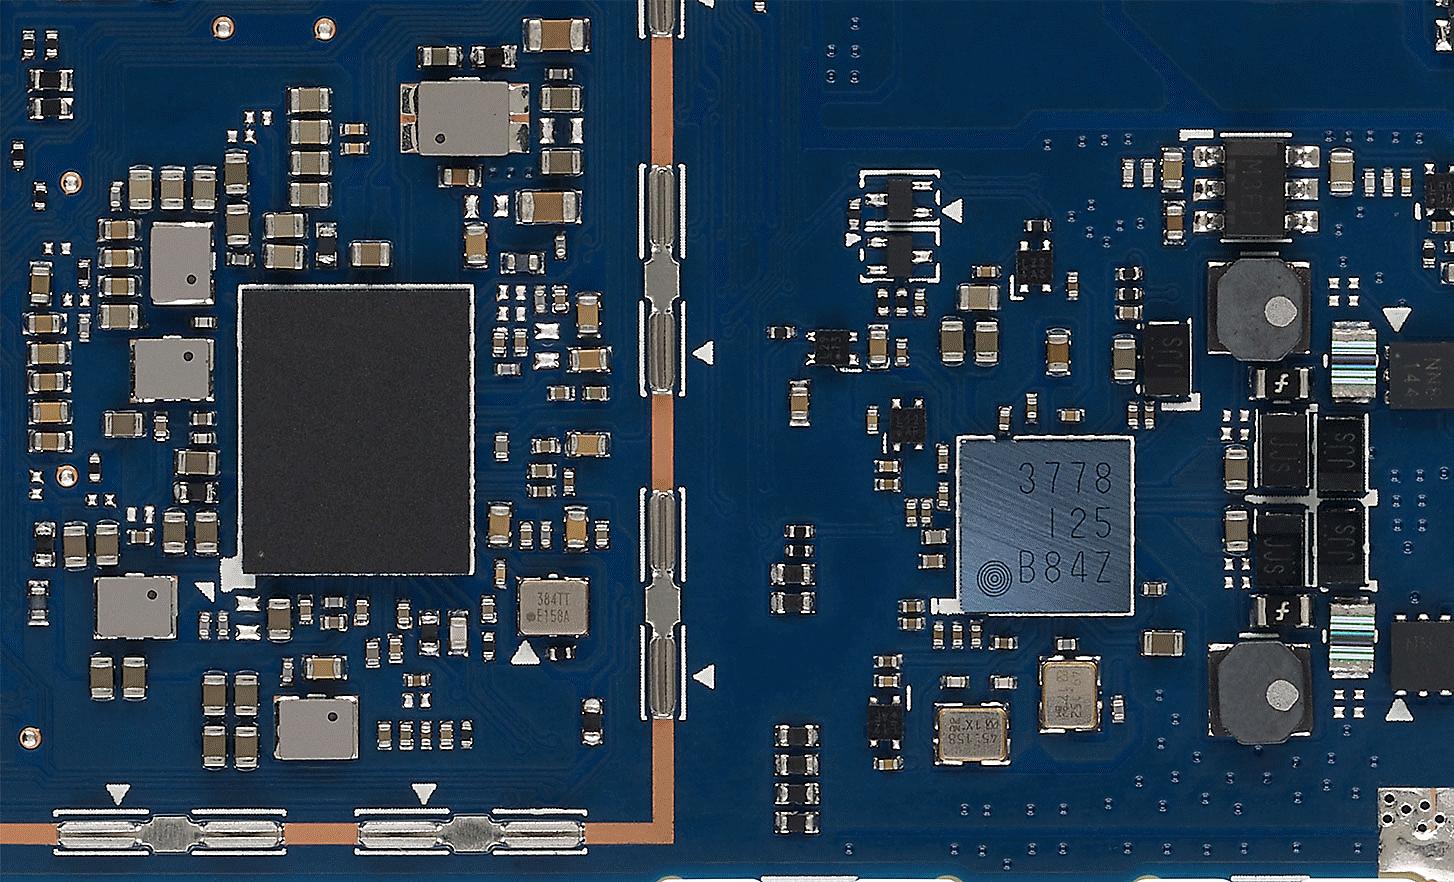 Snímek špičkových komponentů uvnitř šasi modelu NW-A306.